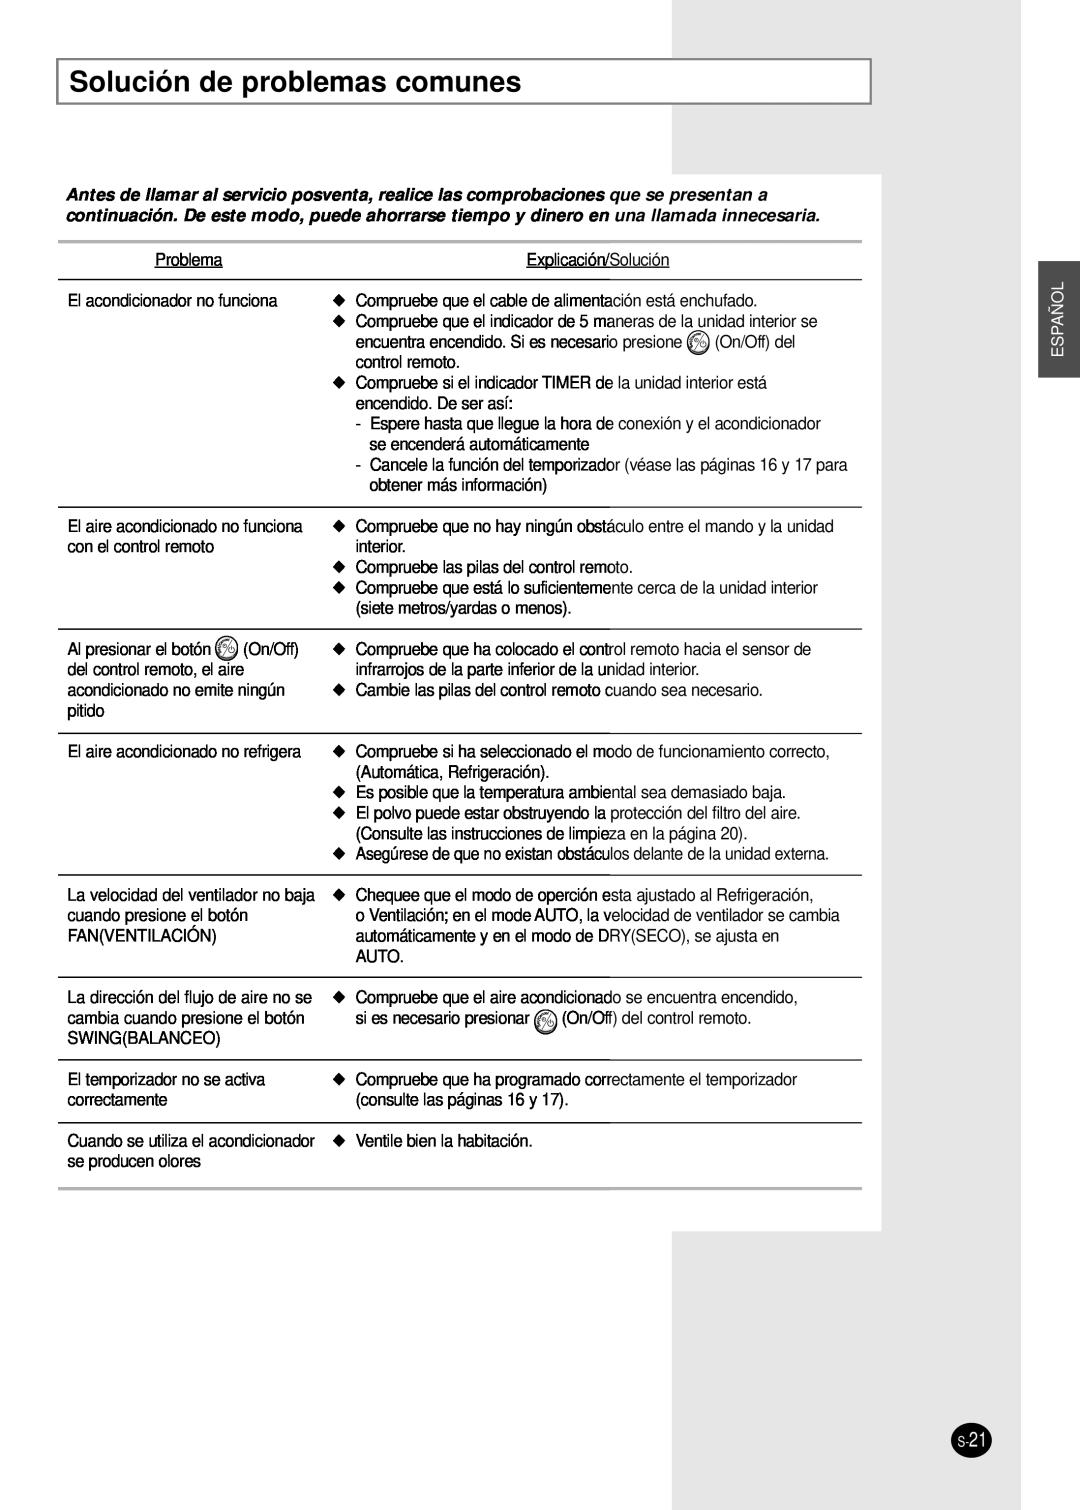 Samsung AM14B1(B2)E07 manuel dutilisation Solución de problemas comunes, Español 